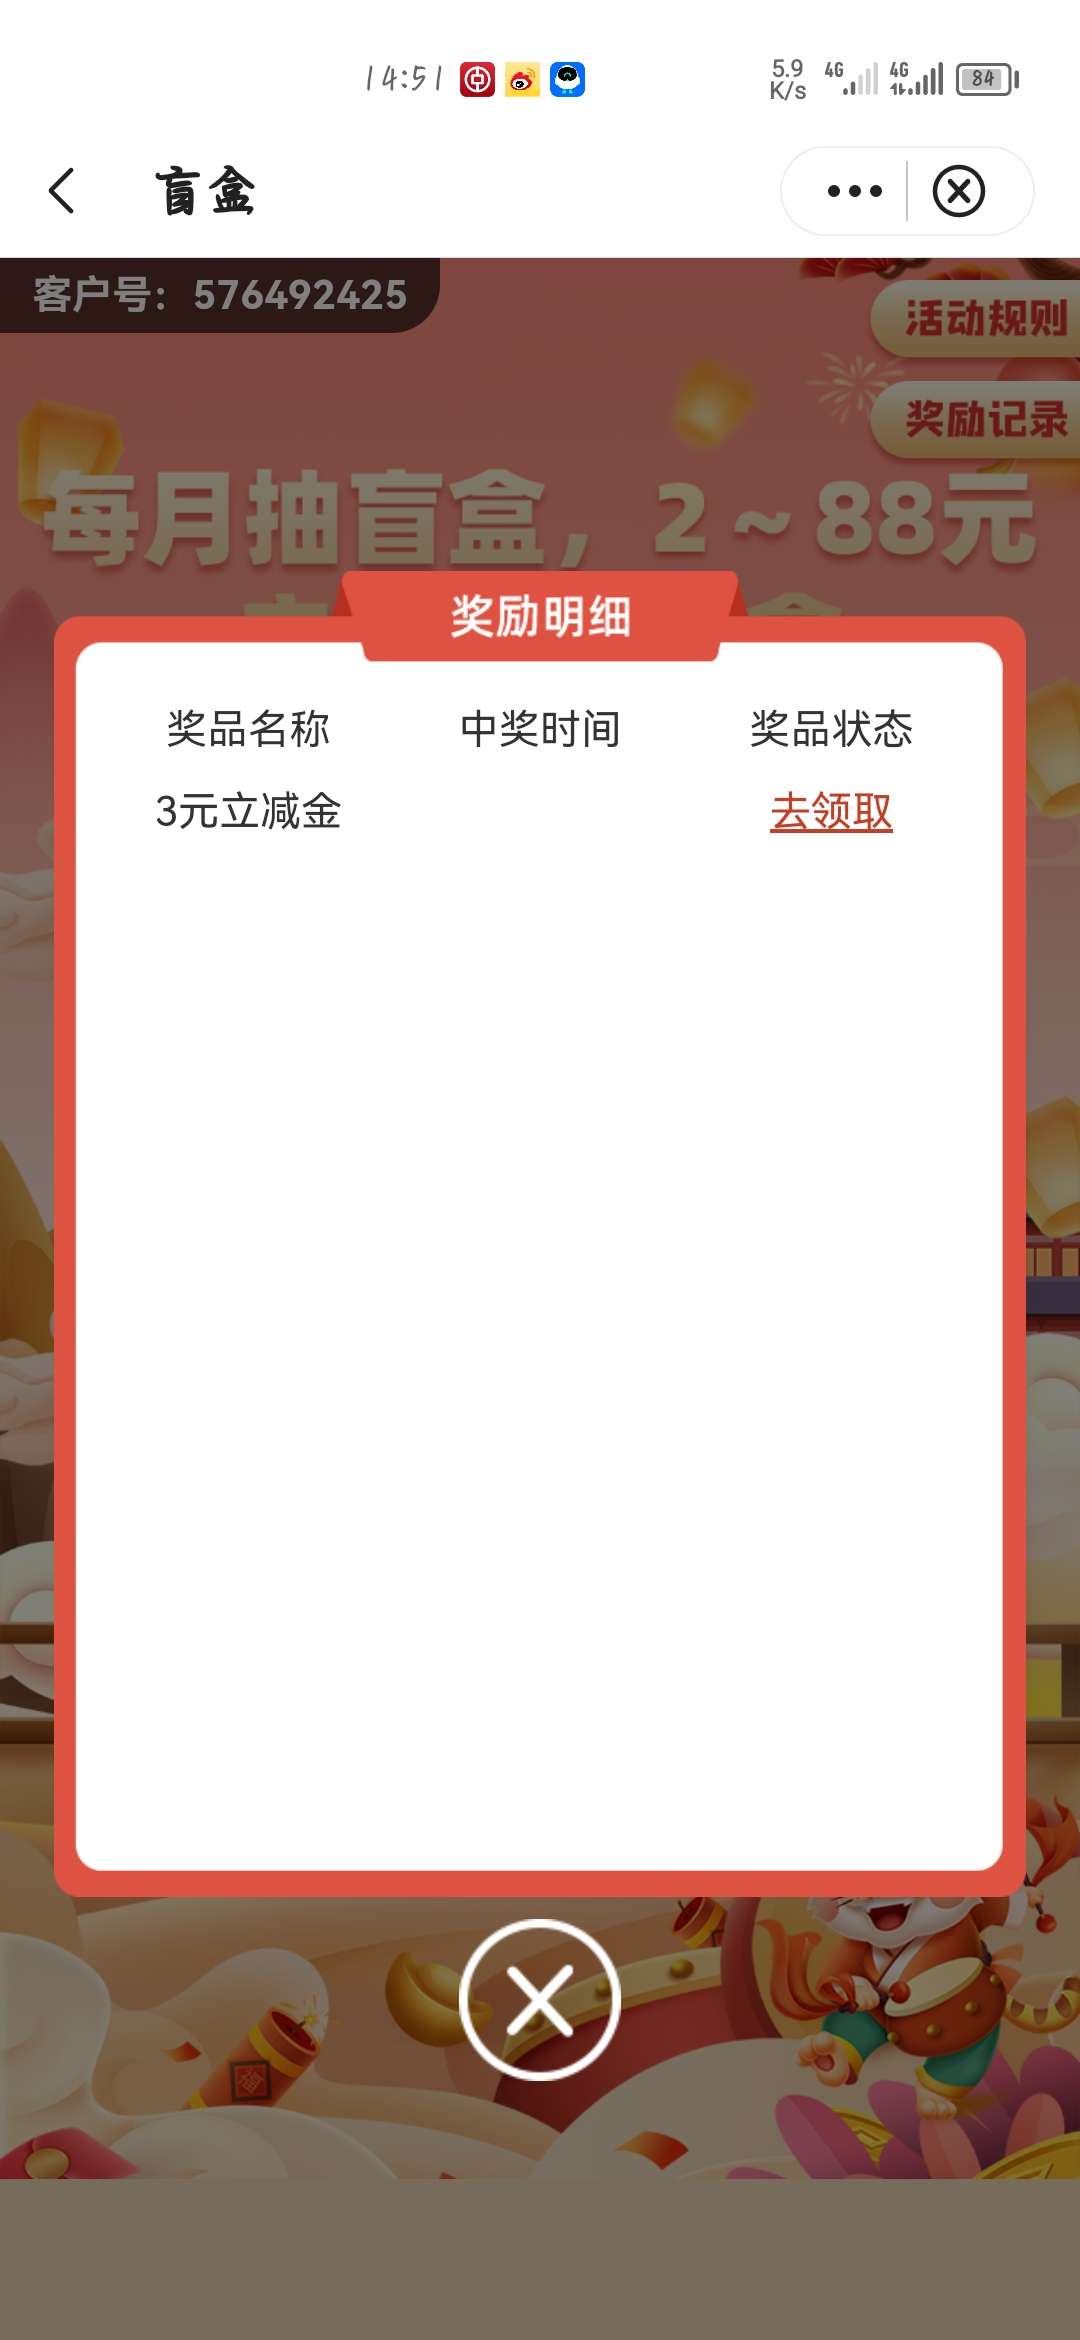 中国银行app2-88元微信立减金！  第1张